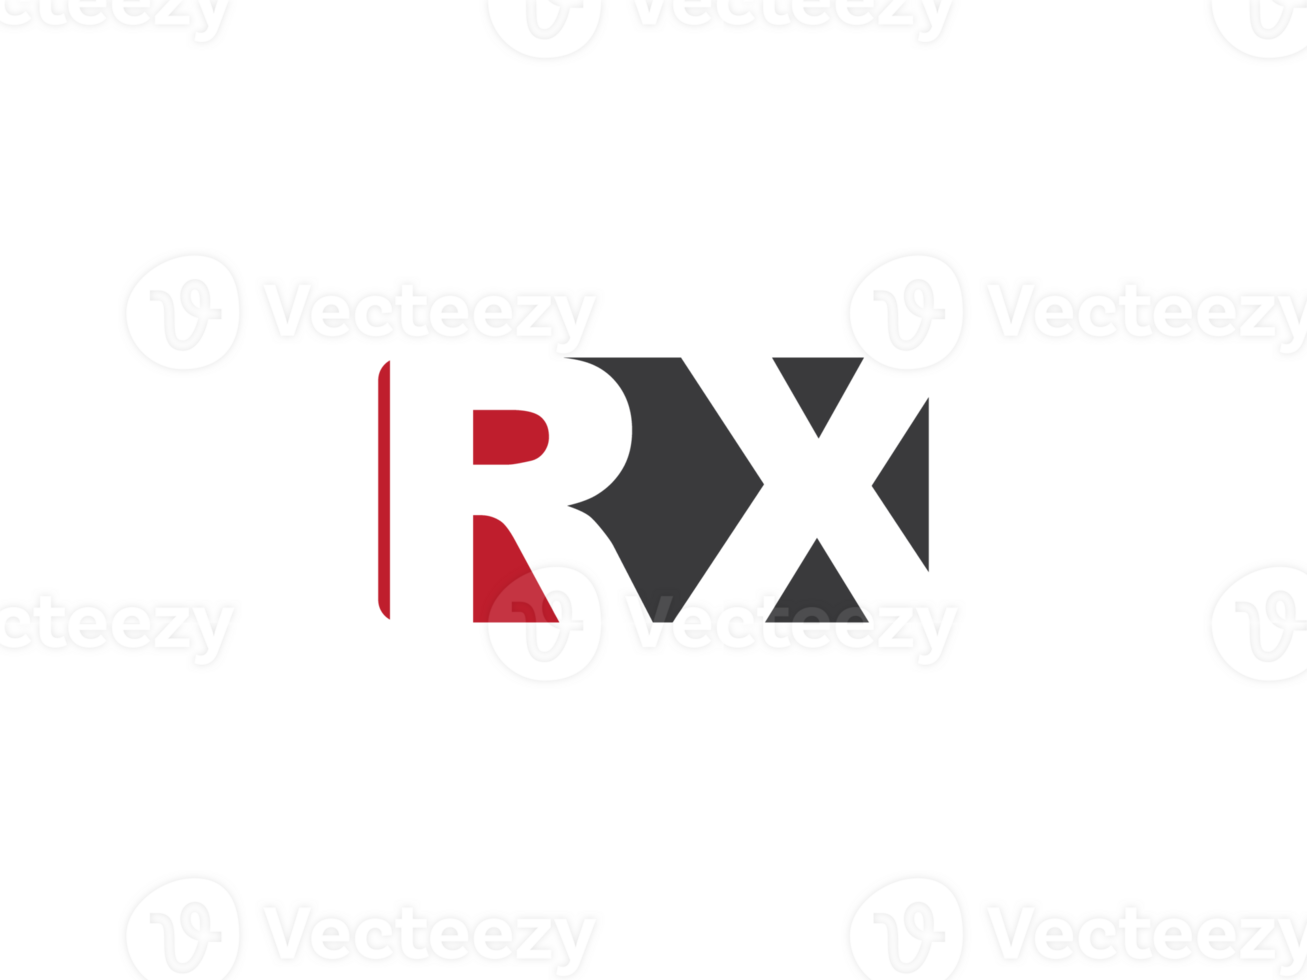 https://static.vecteezy.com/system/resources/previews/027/139/821/non_2x/square-shape-rx-initial-luxury-logo-unique-rx-logo-letter-design-png.png